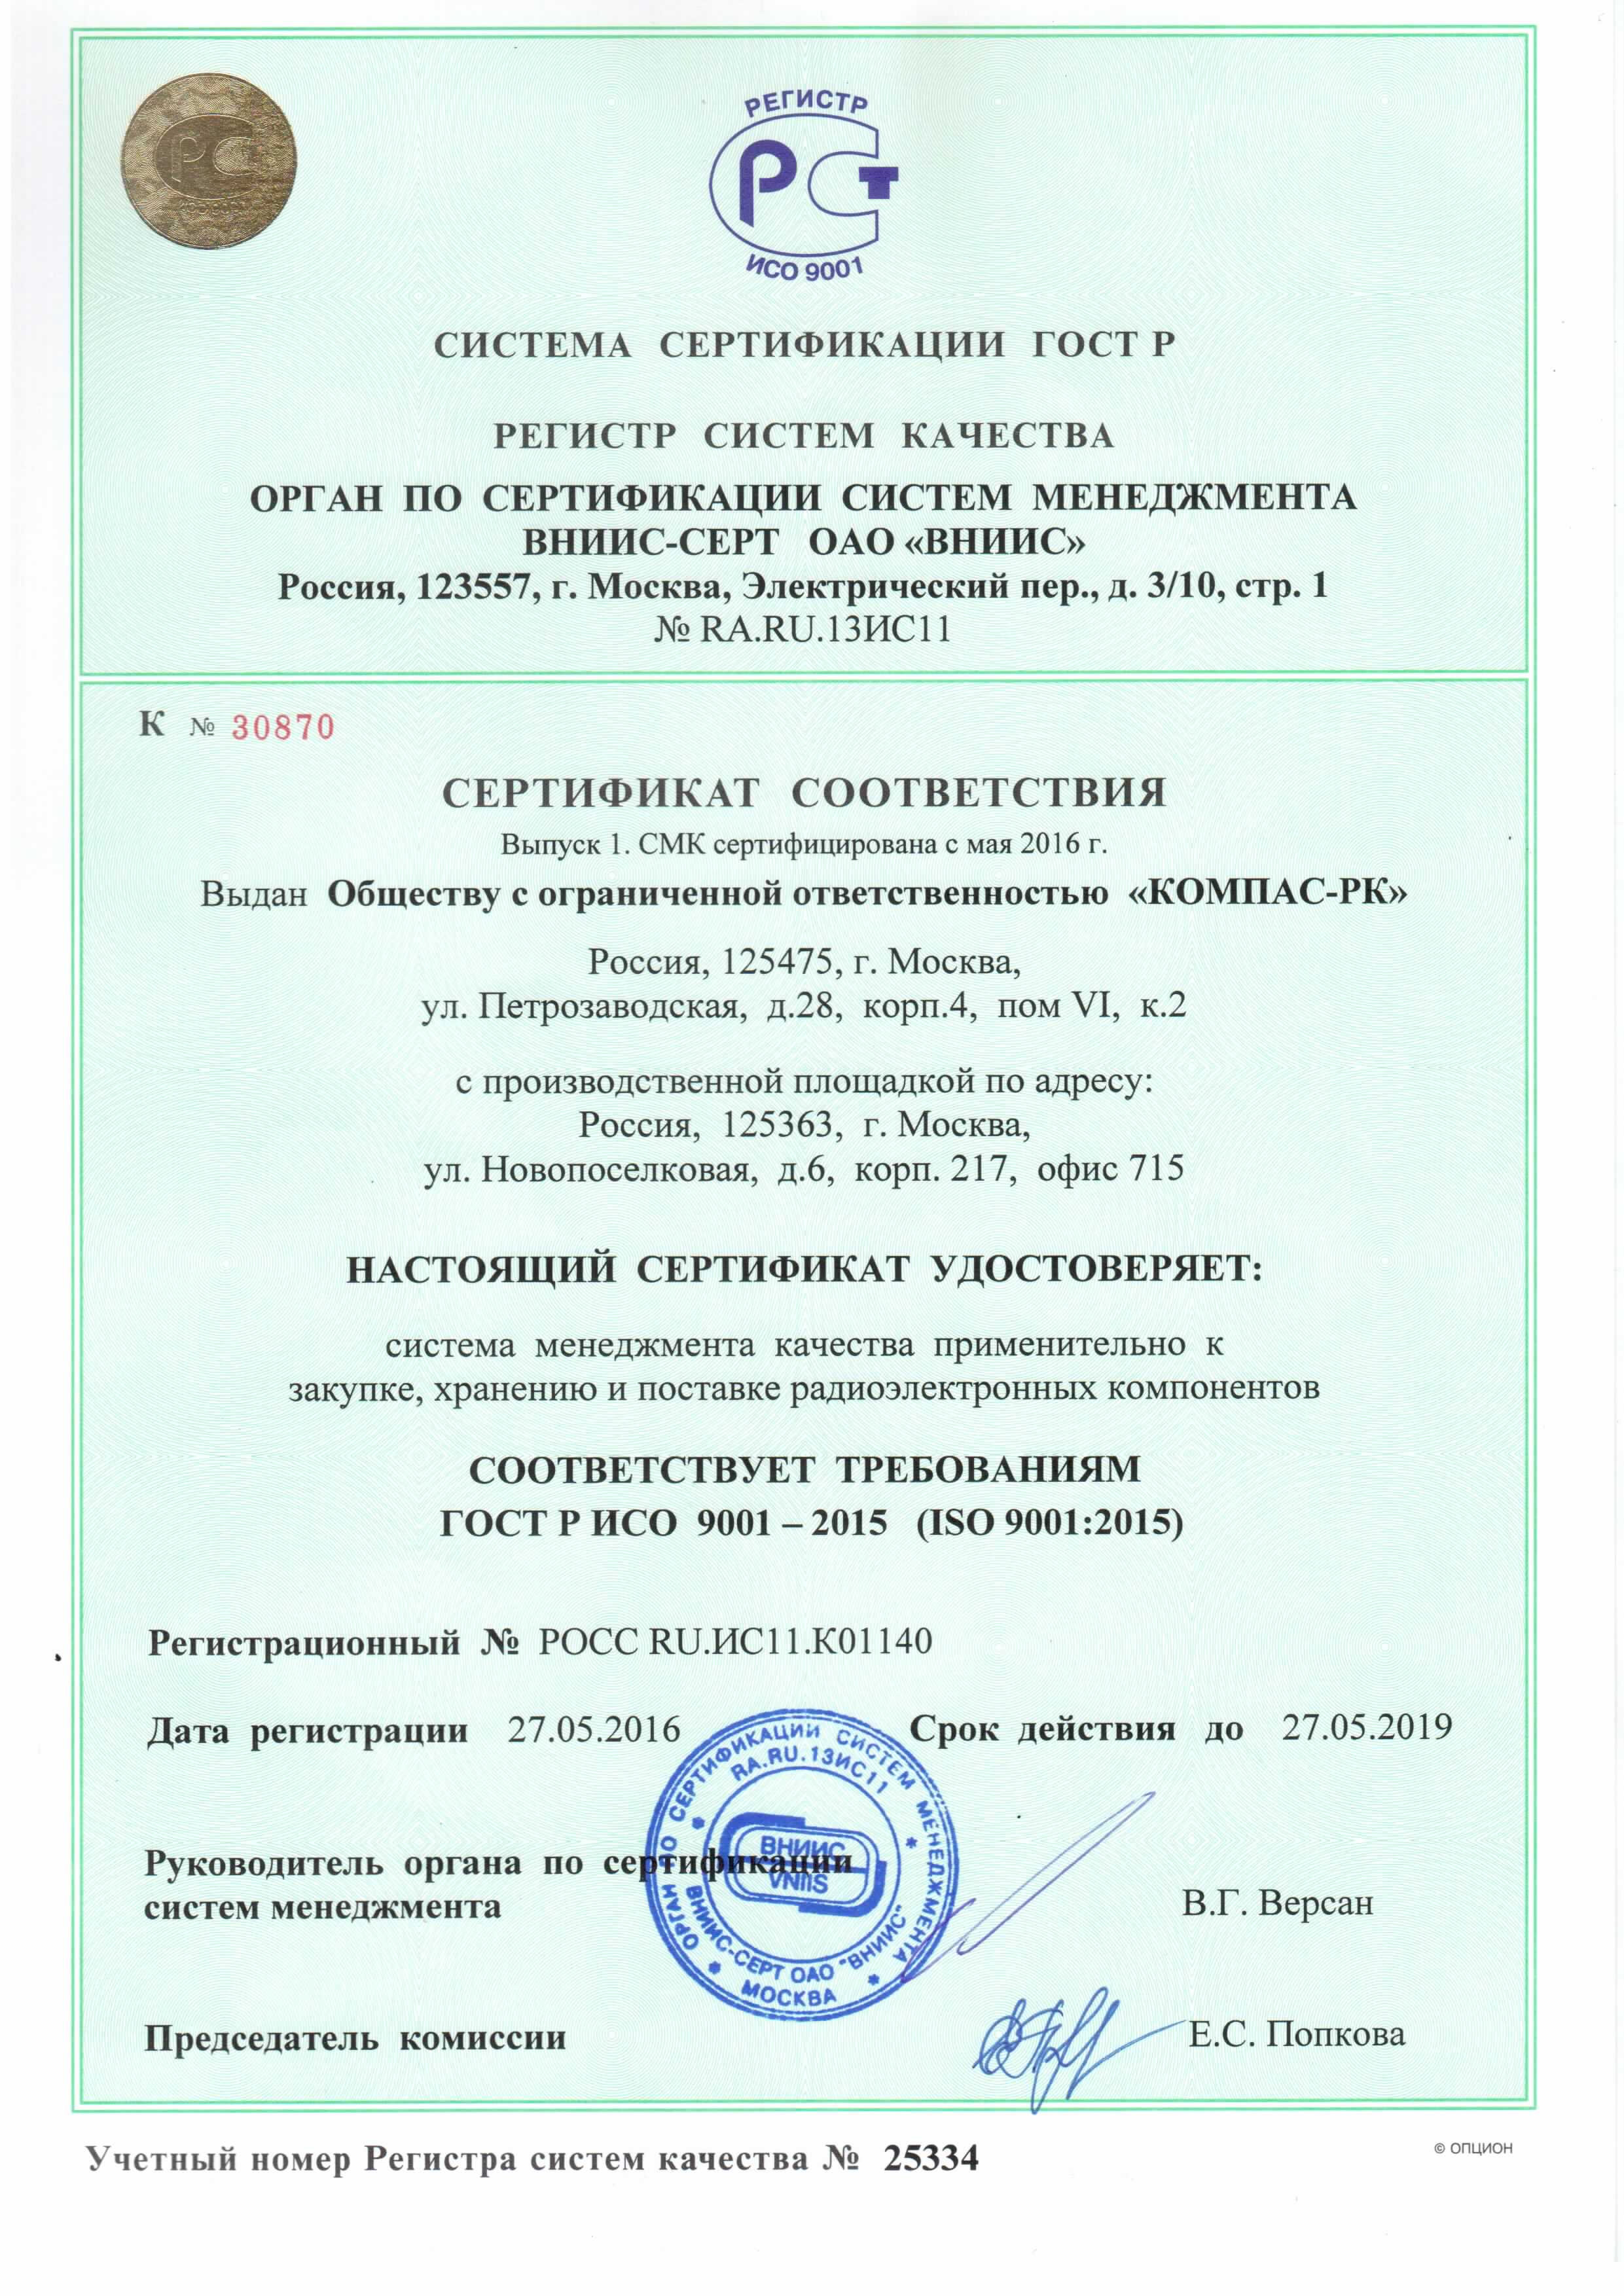 Сертификат соответствия СМК требованиям ГОСТ Р ИСО 9001-2015 (ISO 9001-2015)